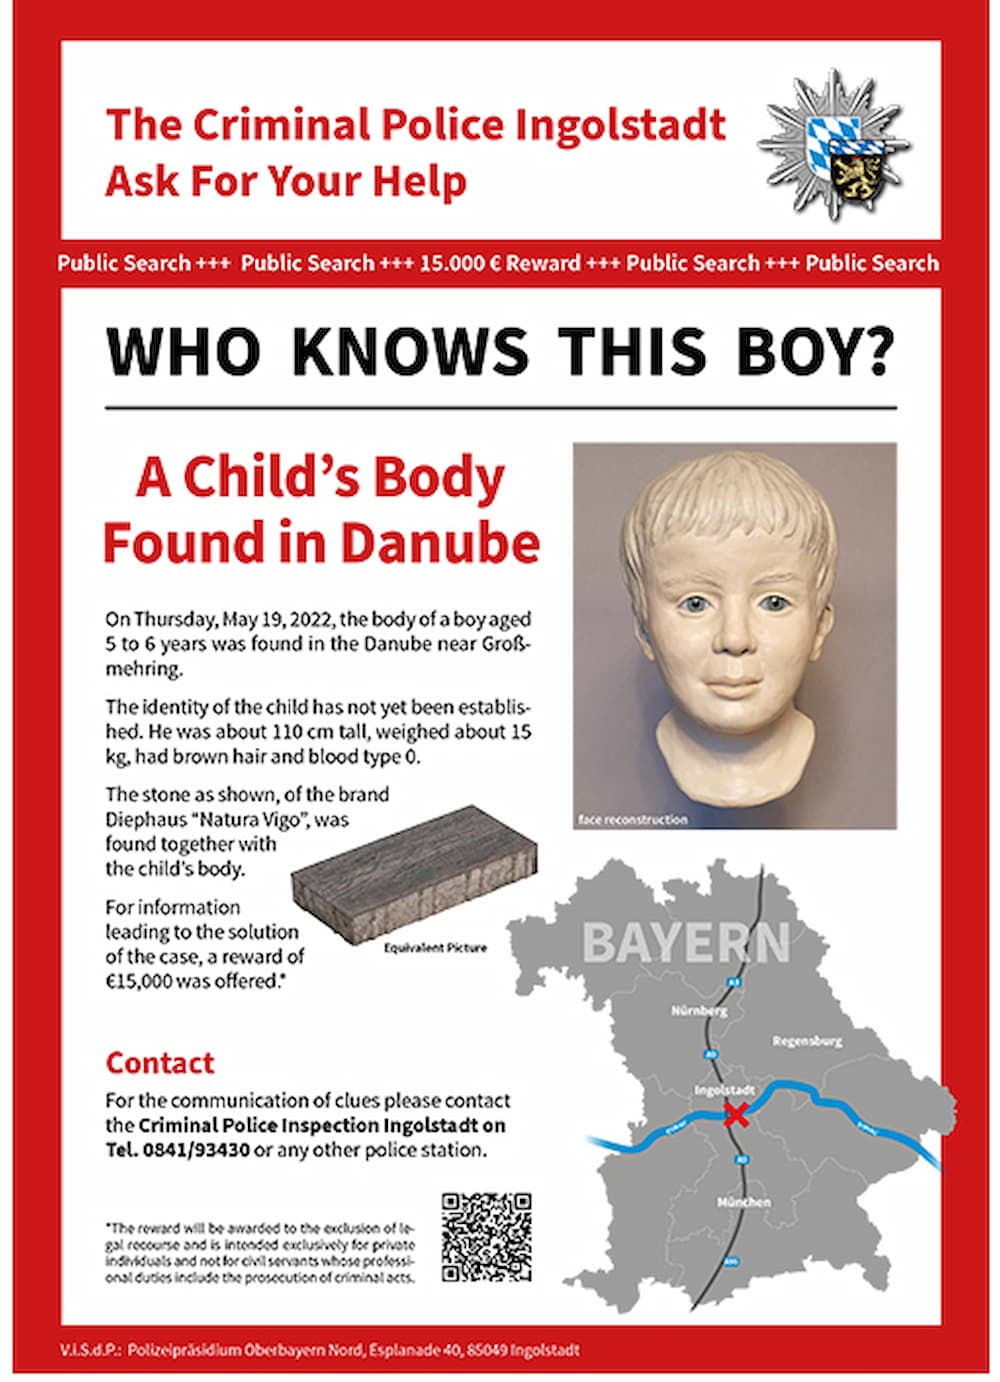 Γερμανία: Βρέθηκε νεκρό παιδί τυλιγμένο σε αλουμινόχαρτο στον Δούναβη – Έρευνα της Interpol (εικόνα)